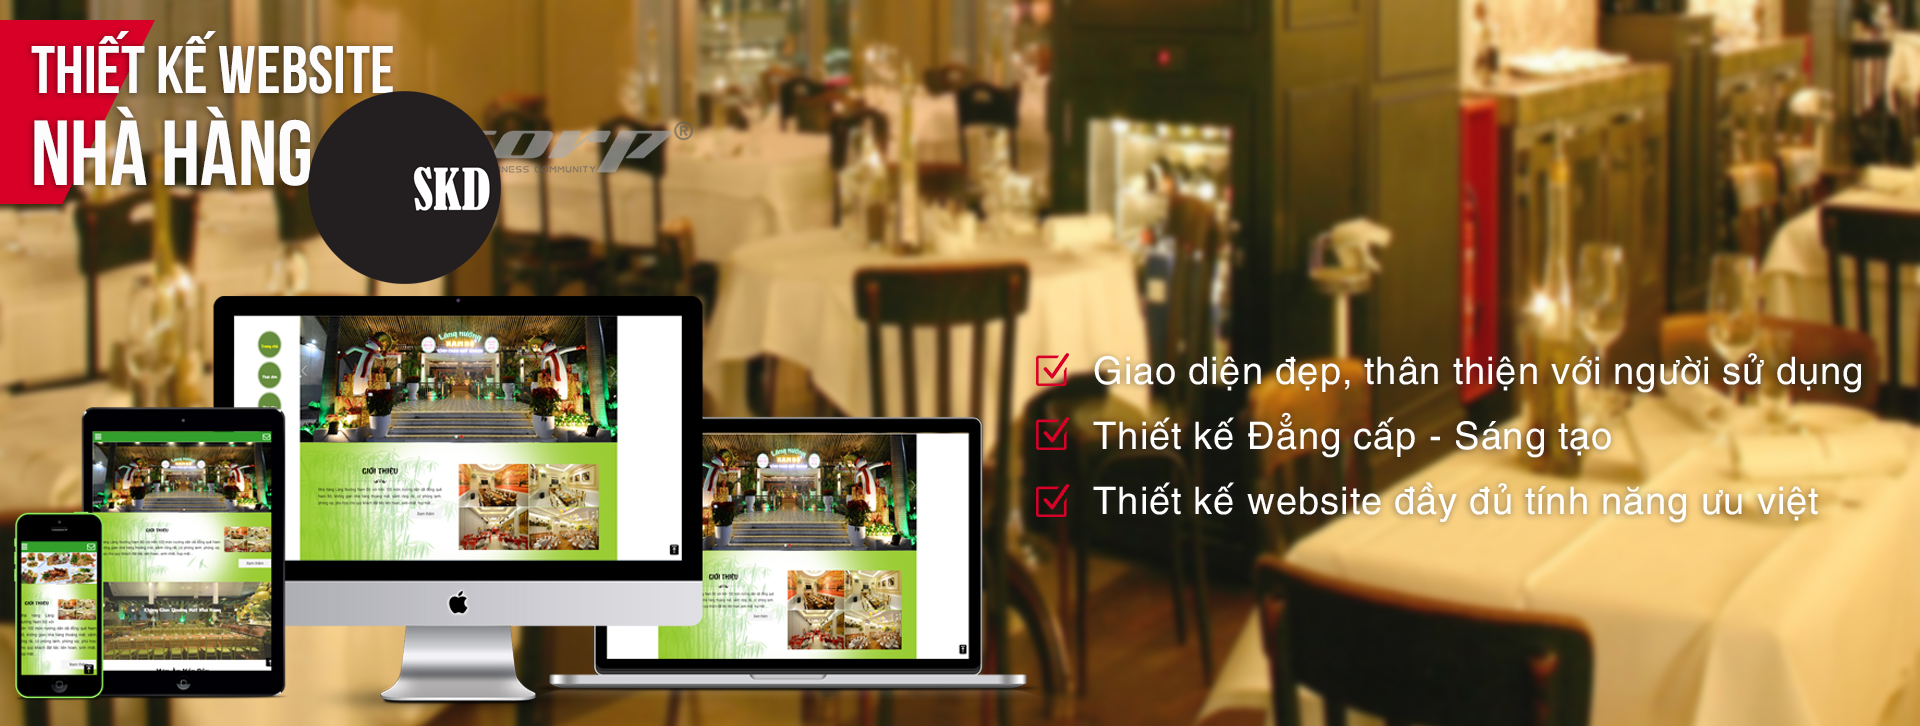 Lợi ích của thiết kế website cho nhà hàng, quán ăn !!!